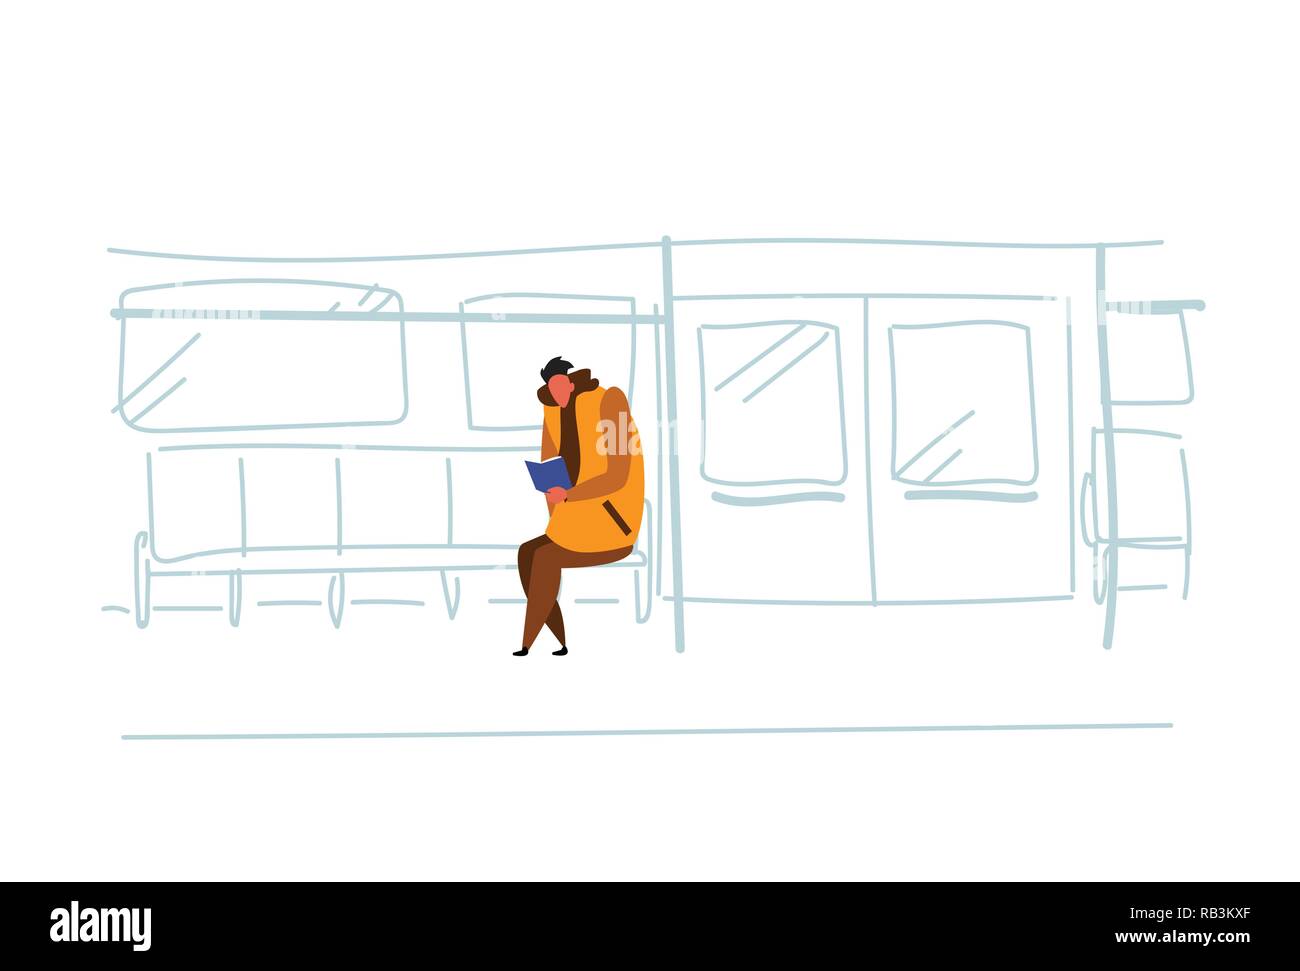 Uomo informale alla metropolitana passeggero seduto treno metro libro vista interna public underground city Transport Concept cartoon maschio abbozzo del carattere doodle orizzontale Illustrazione Vettoriale